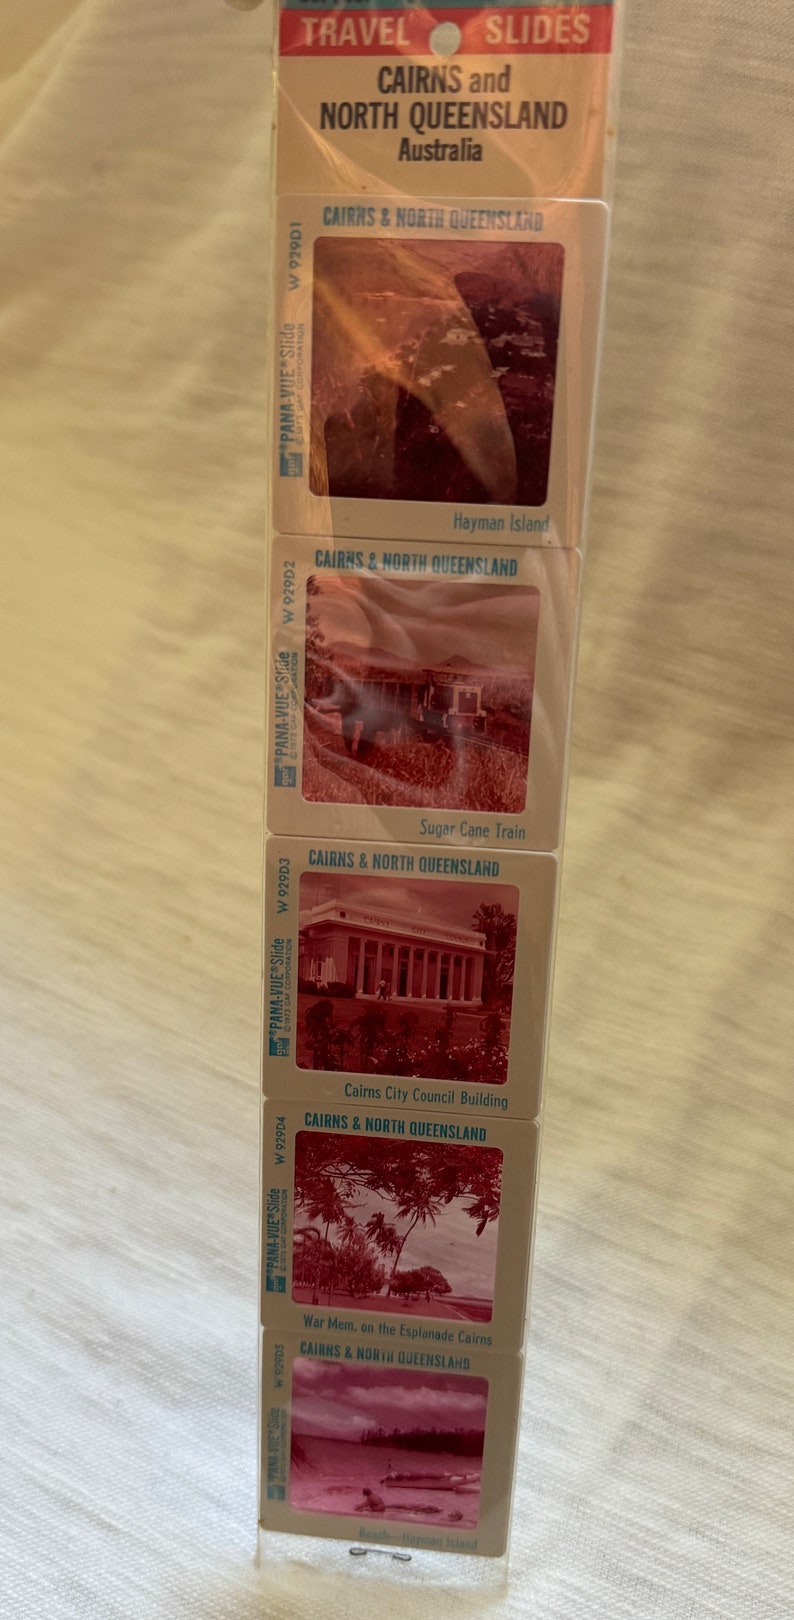 Australian Souvenir 35mm Travel Slides by Pana-Vue gaf 15 Slide images In Original Packaging Melbourne, Queensland, Brisbane Tourism set image 4